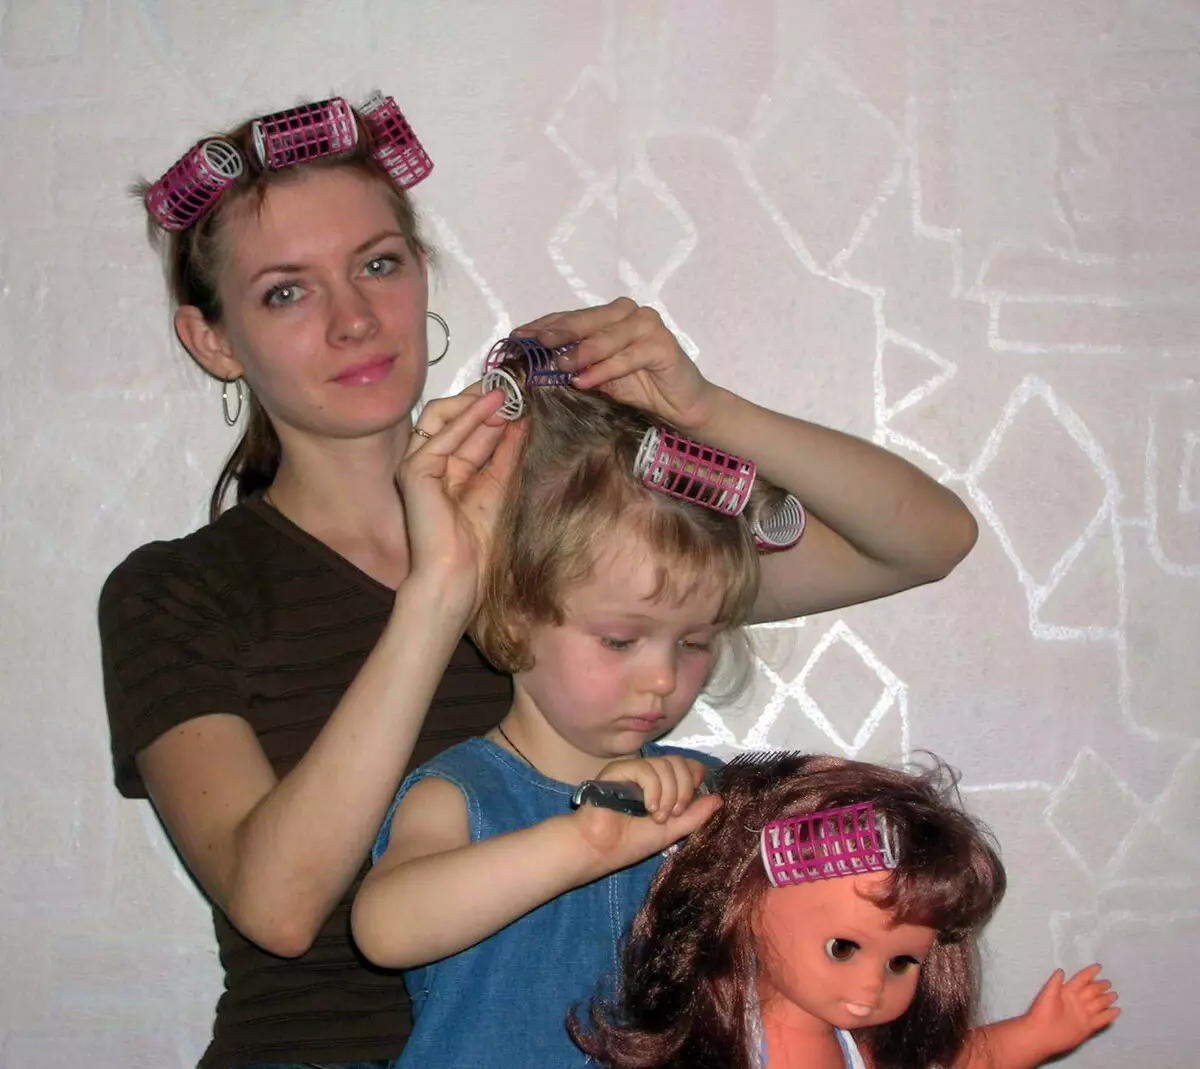 مدل موهای جشن برای دختران با موهای بلند (55 عکس): چگونه مدل موهای کودکان را برای تعطیلات با دستان خود در خانه انجام دهید؟ 16836_15